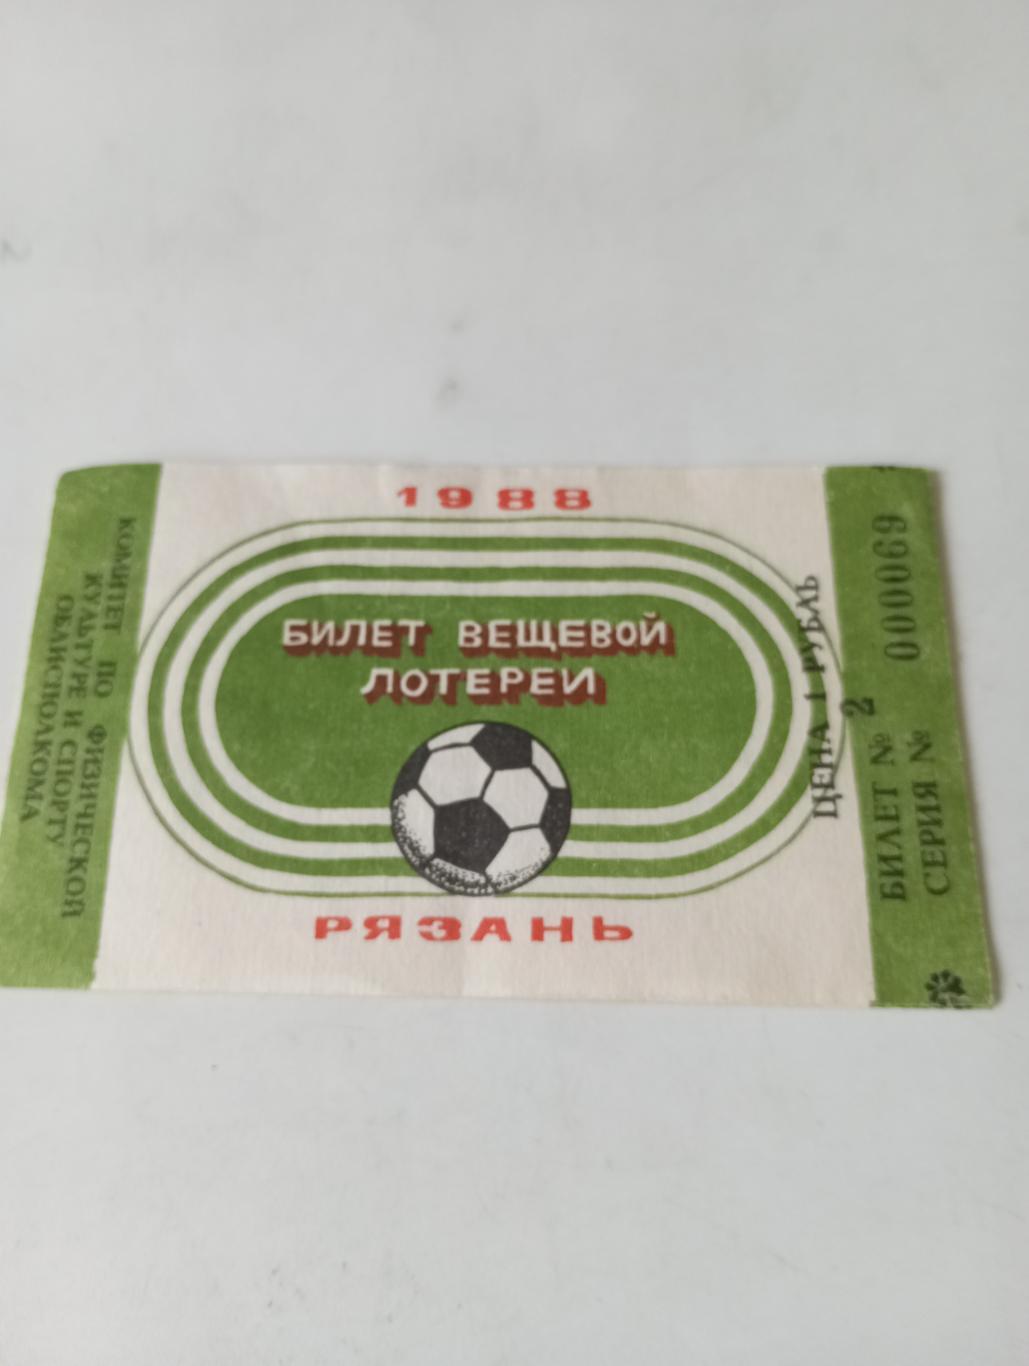 Билет..Рязань 1988 (вещевой лотереи) на футболе